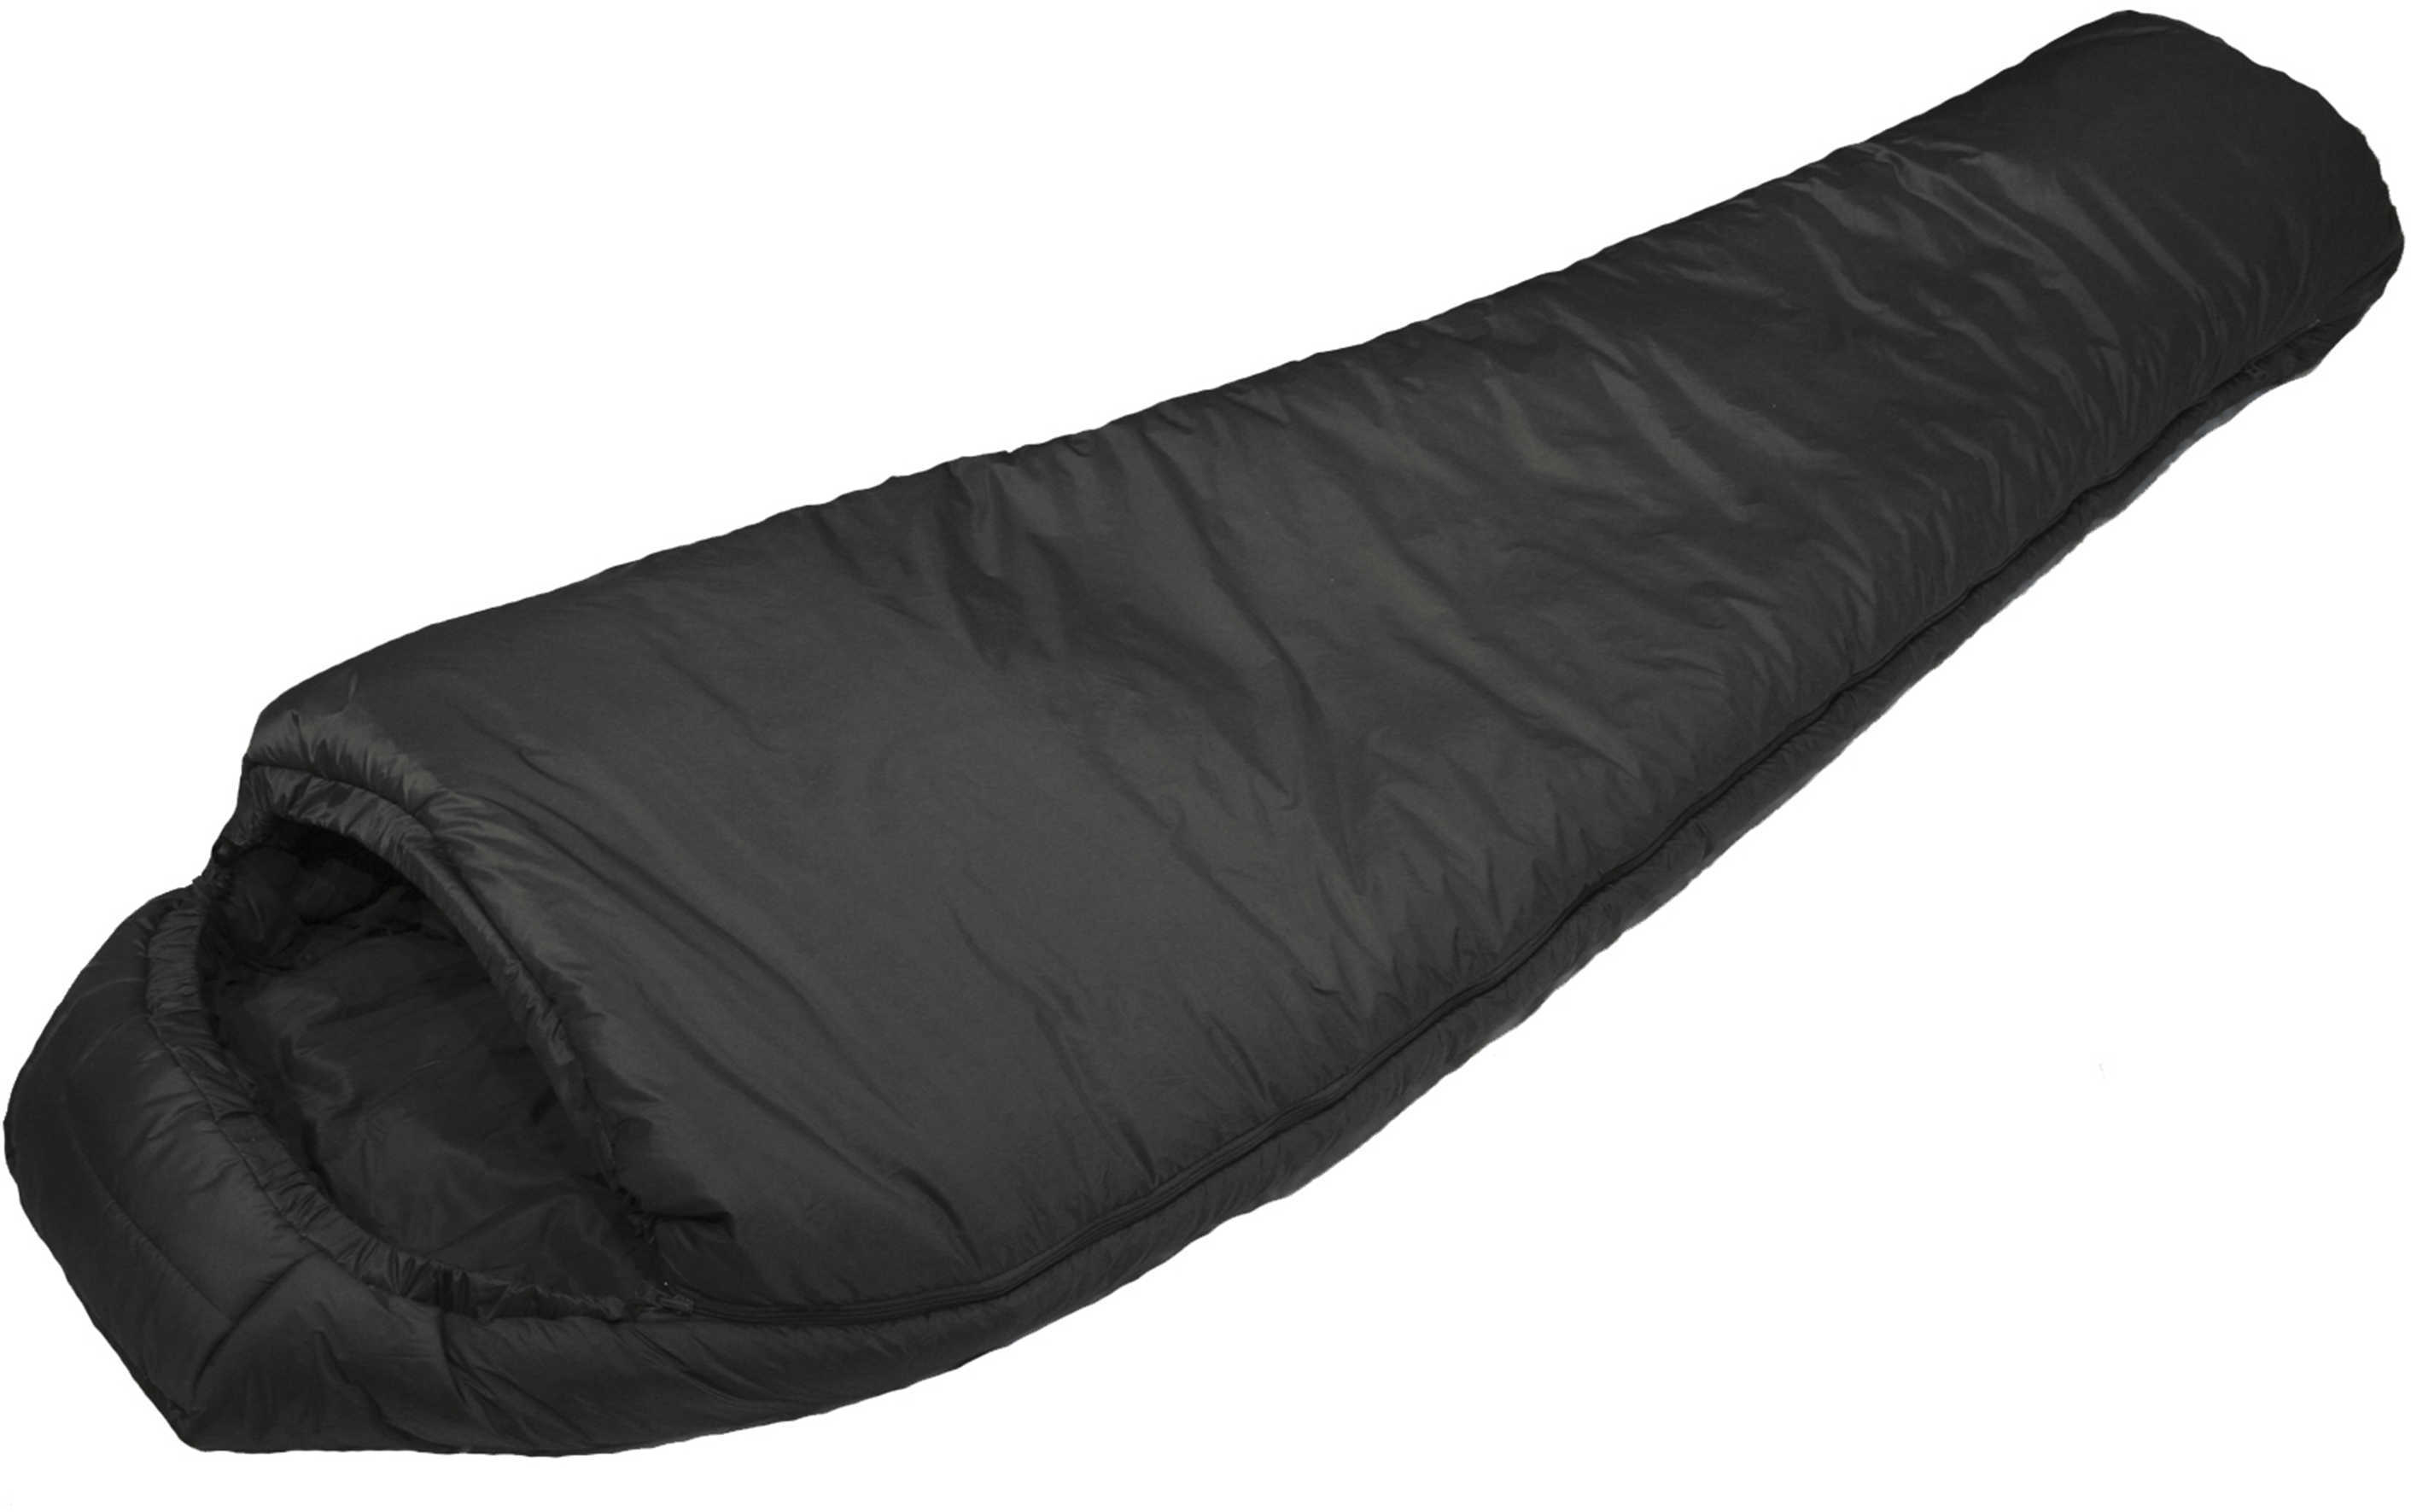 Snugpak Softie 3 Merlin Sleeping Bag Black